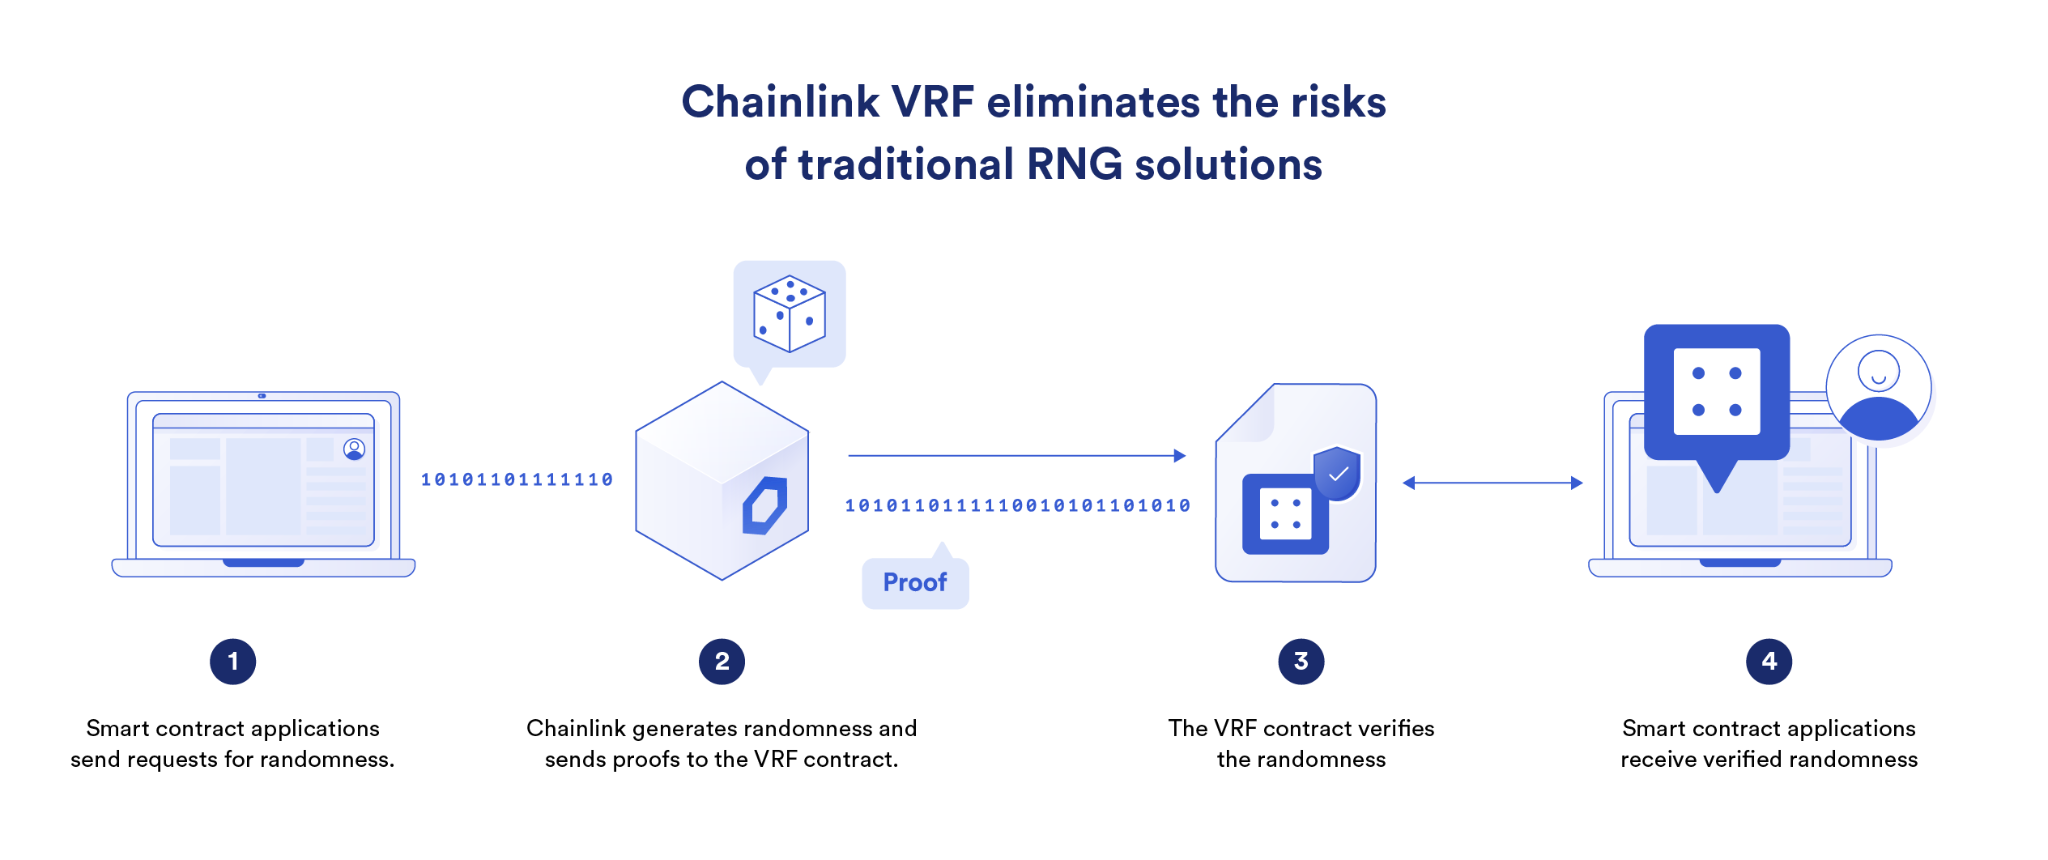 Chainlink VRF